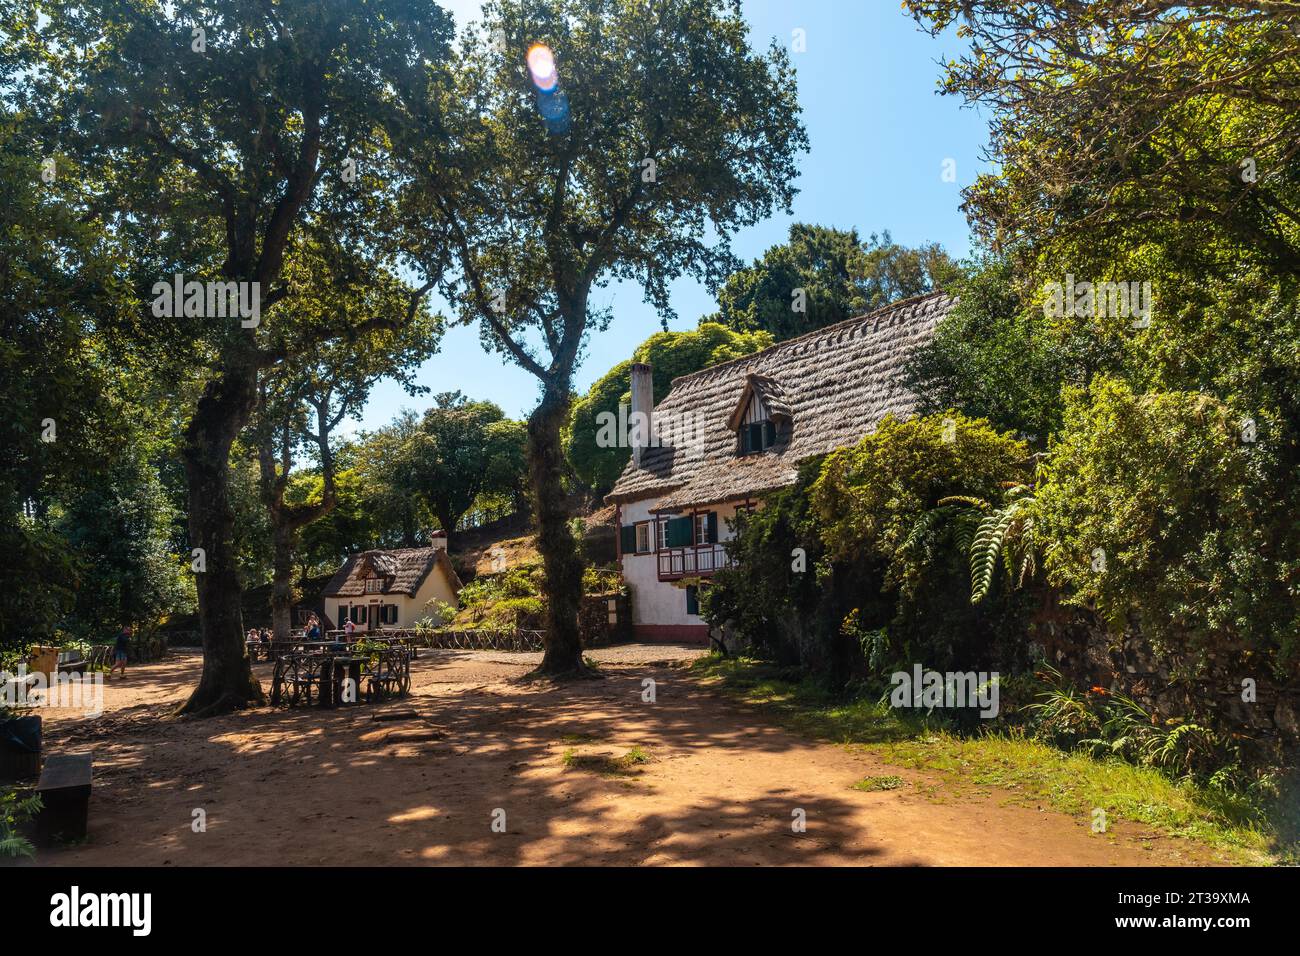 Schöne Häuser in der Natur am Anfang der Levada do Caldeirao Verde, Queimadas, Madeira. Portugal Stock Photo